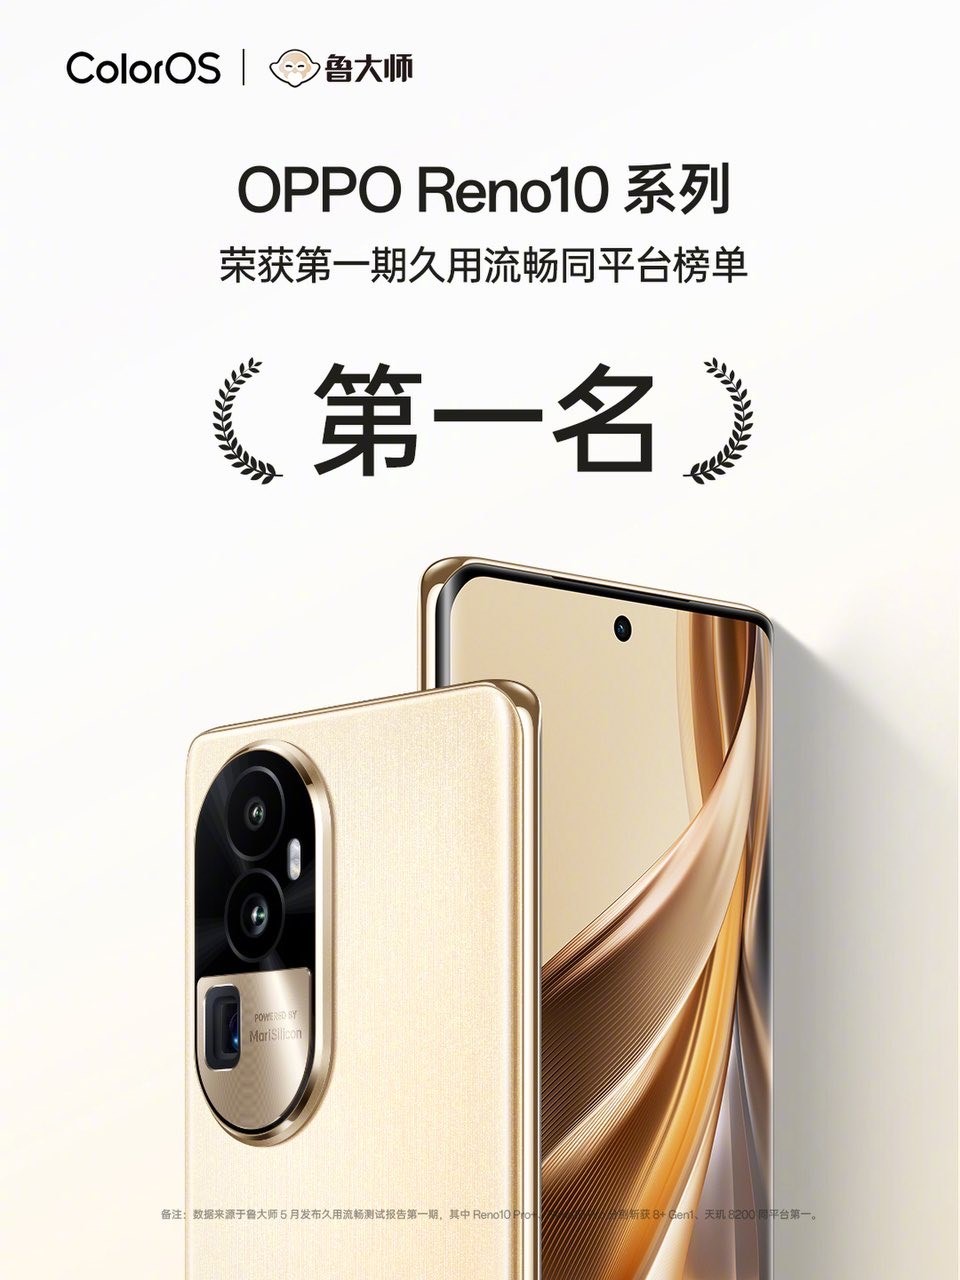 OPPO Reno 10 series